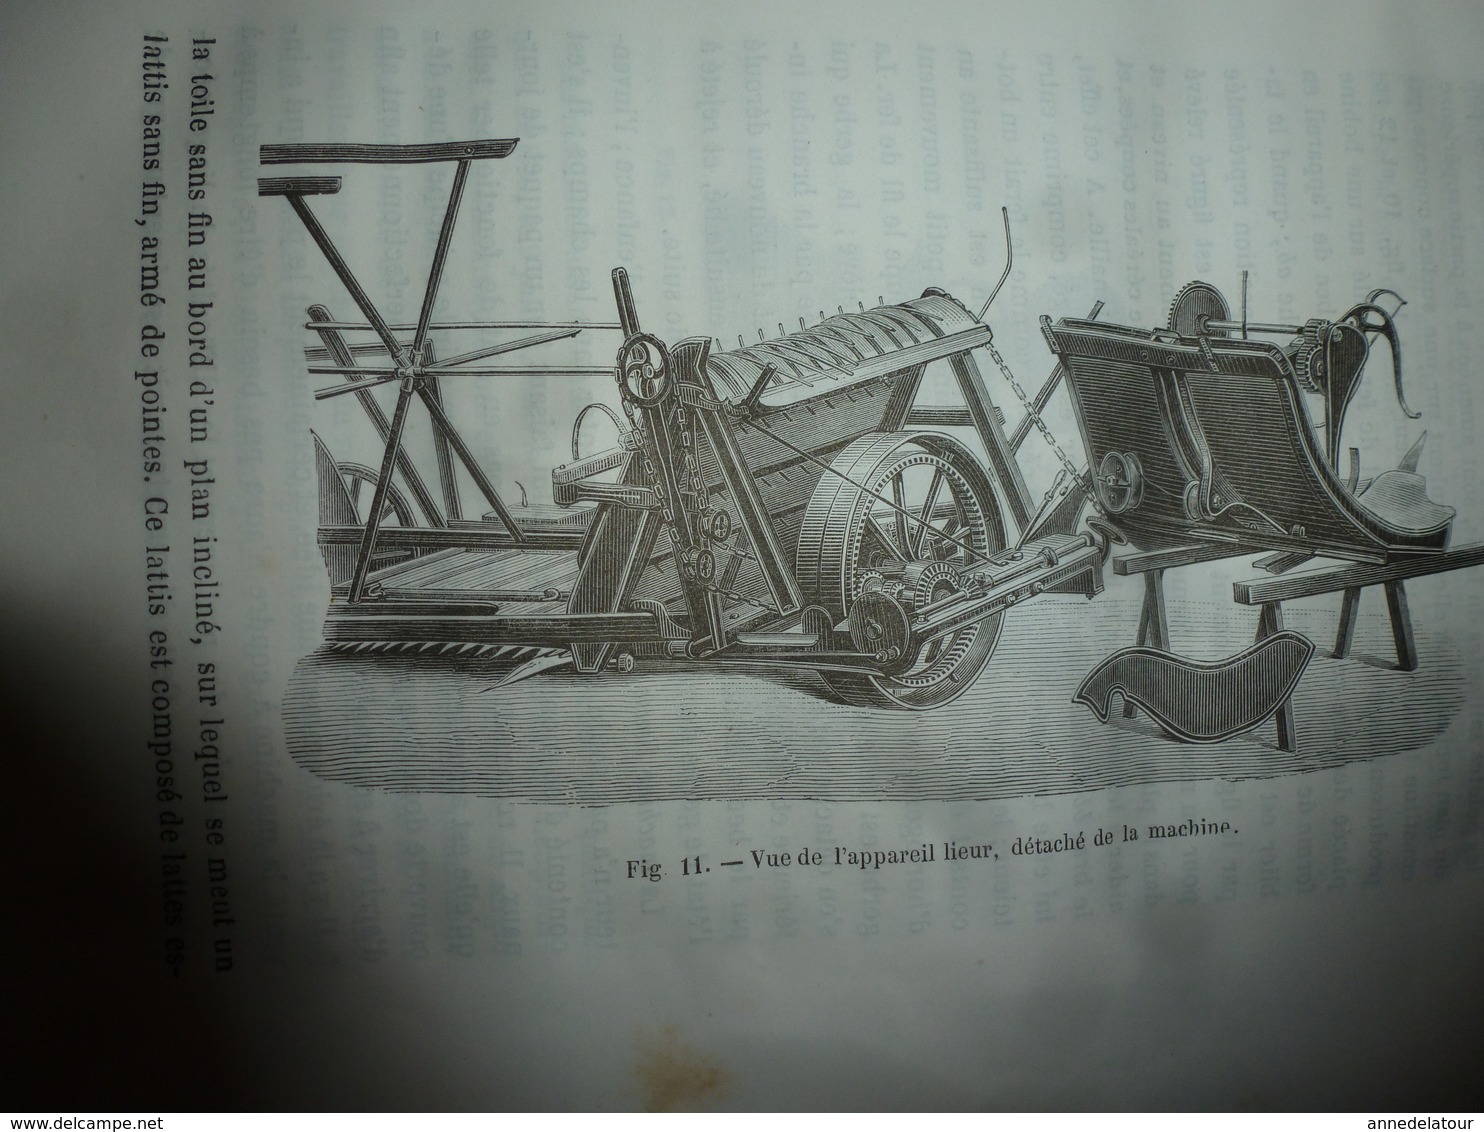 1874 RAPPORTS sur l'AGRICULTURE par Eugène Tisserand (avec dessins des matériels qui étaient attelés par les chevaux)